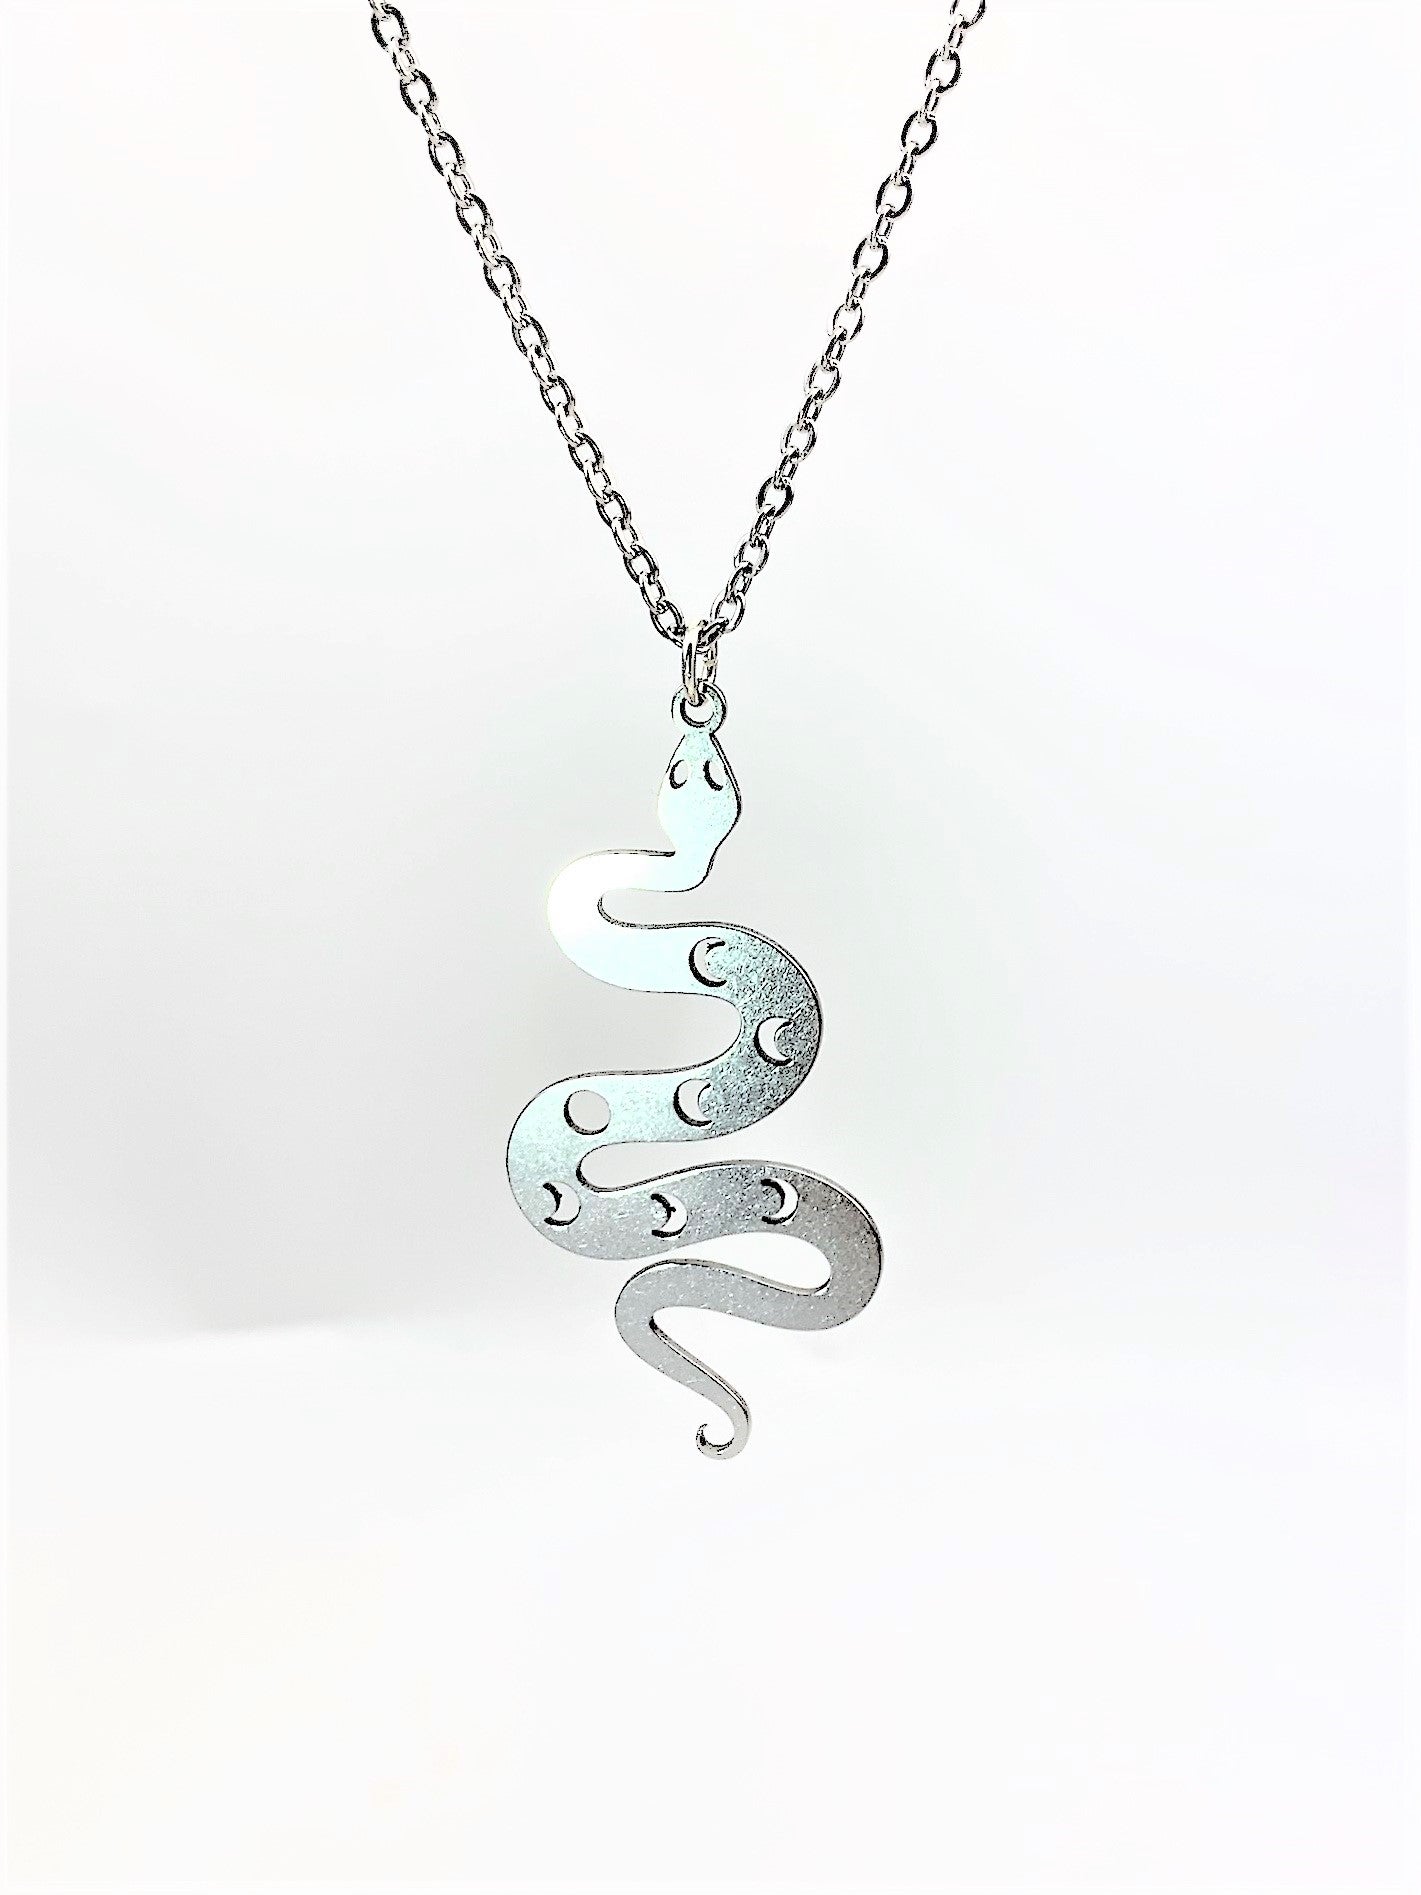 Mystical Snake Necklace